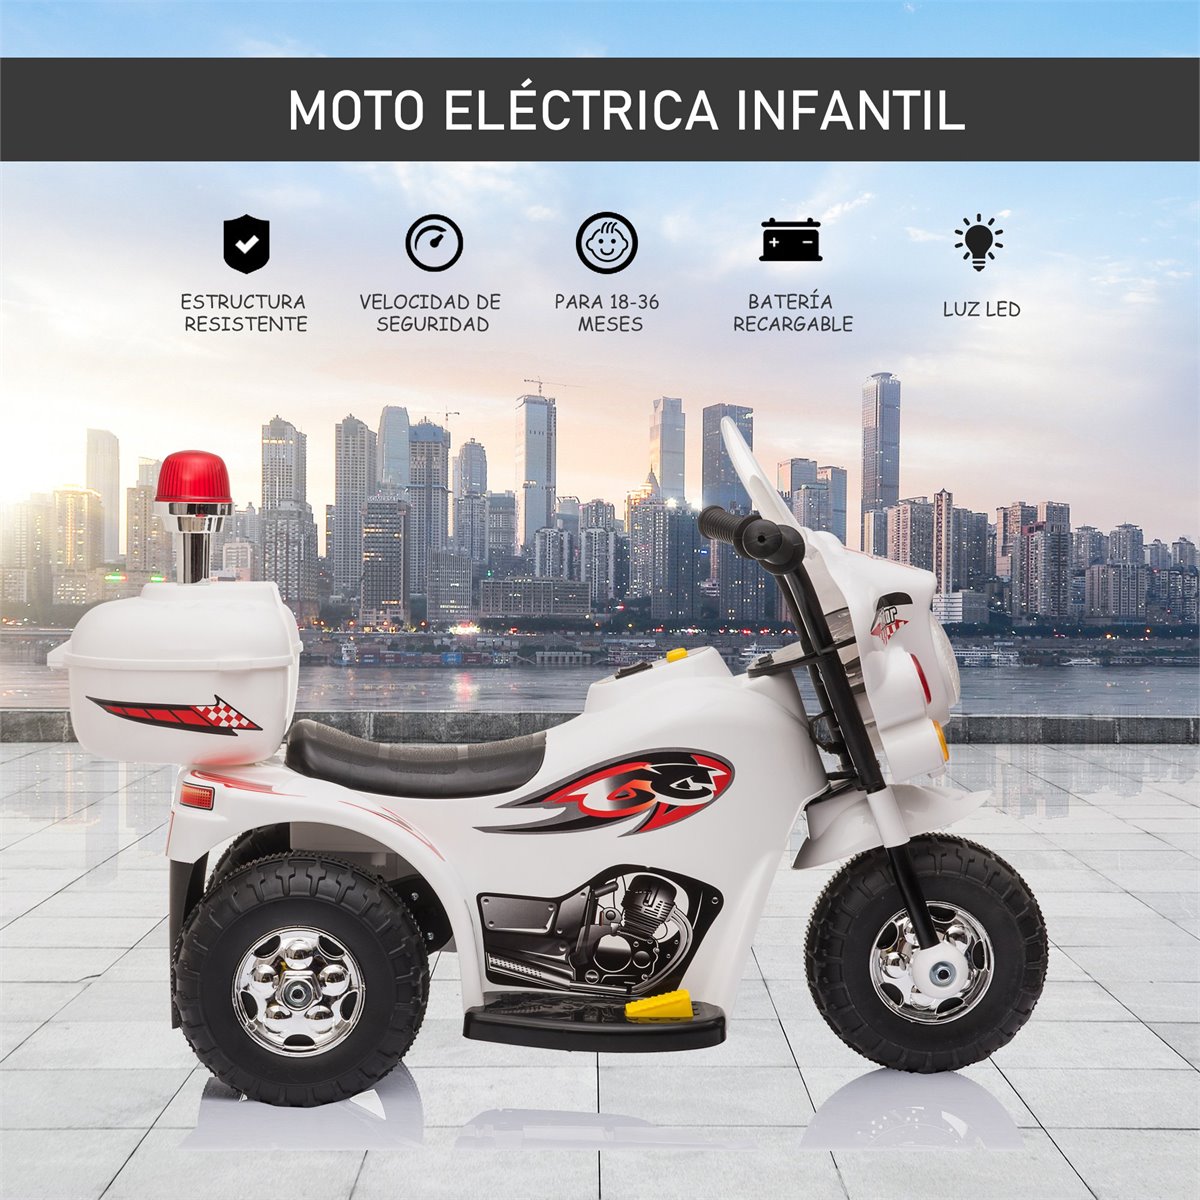 Moto Eléctrica Infantil - HOMCOM Moto Eléctrica Infantil, Moto Eléctrica  Infantil +3 Años, 6V, Luces, Música